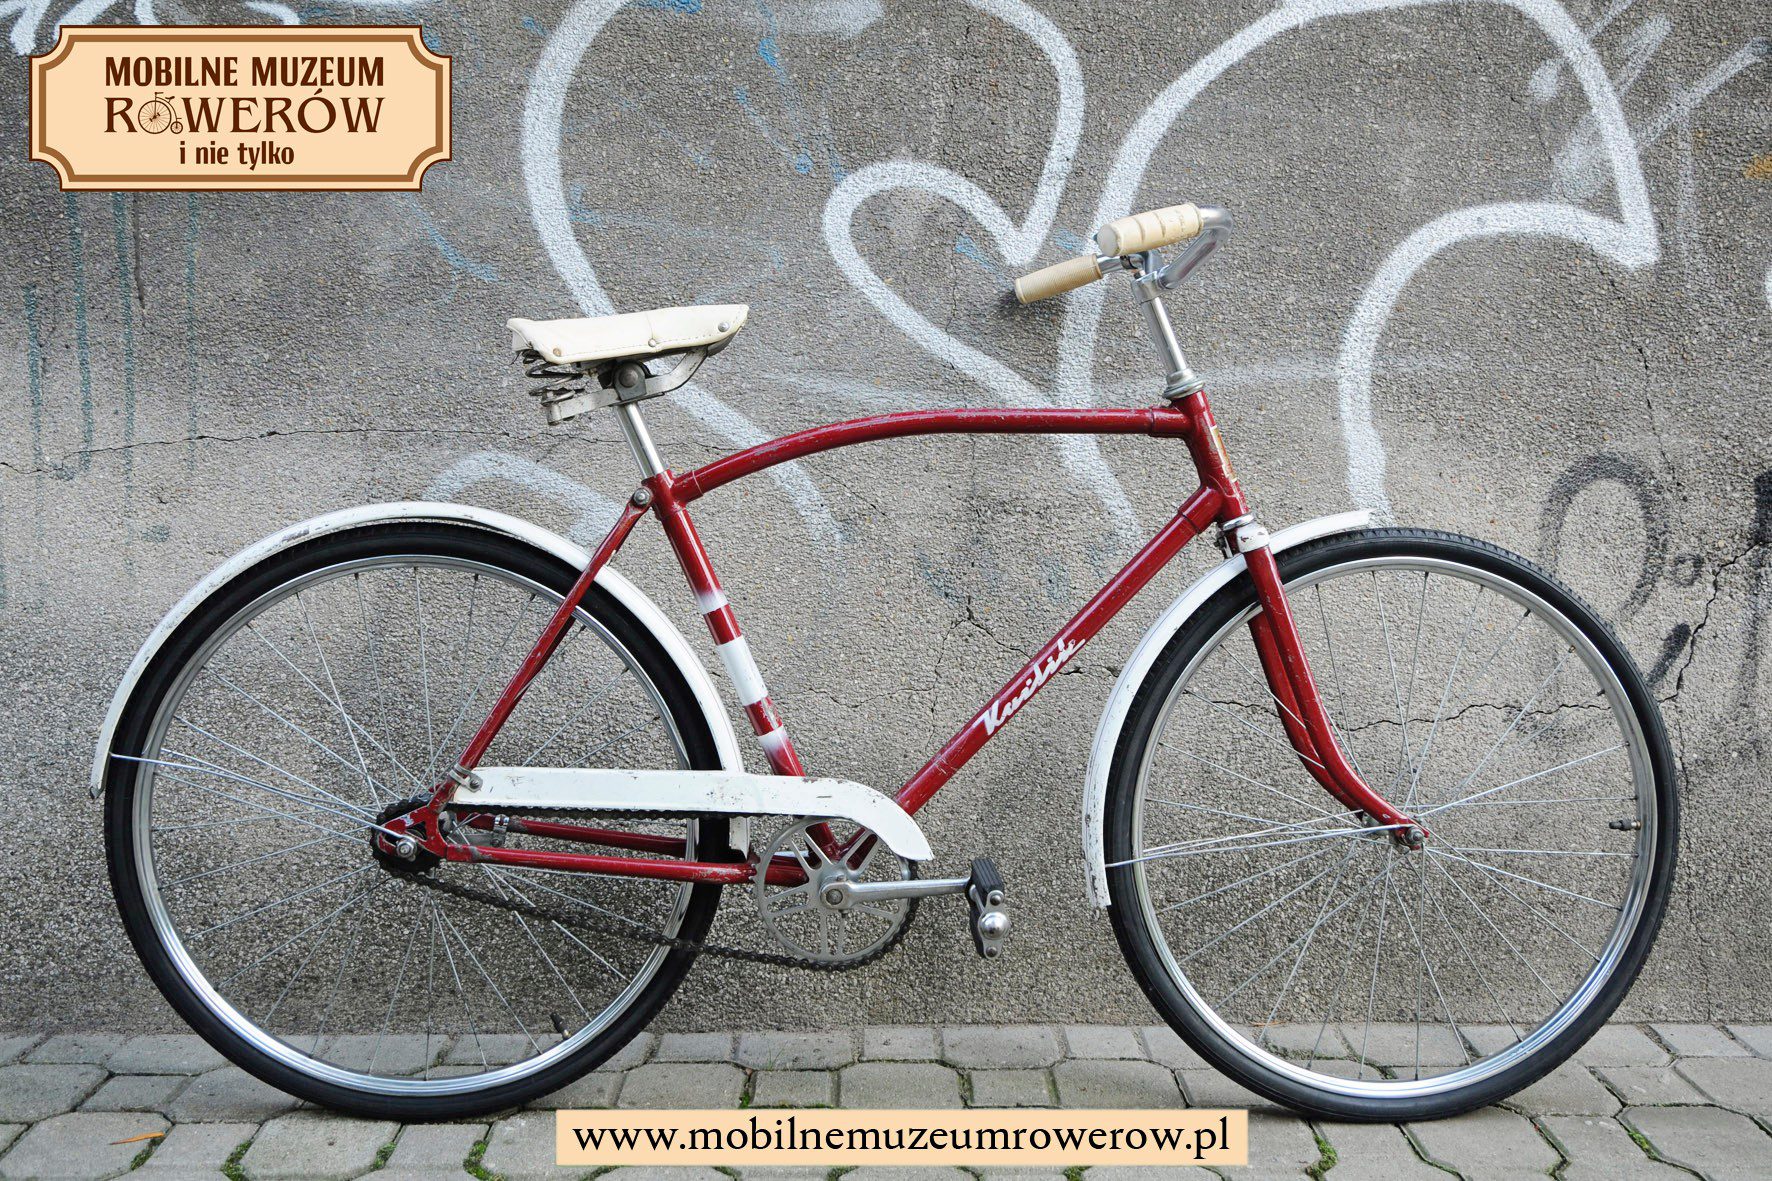 eventy rowerowe rower Karlik Romet wystawy pokazy rowerów mobilne muzeum rowerów zabytkowe rowery